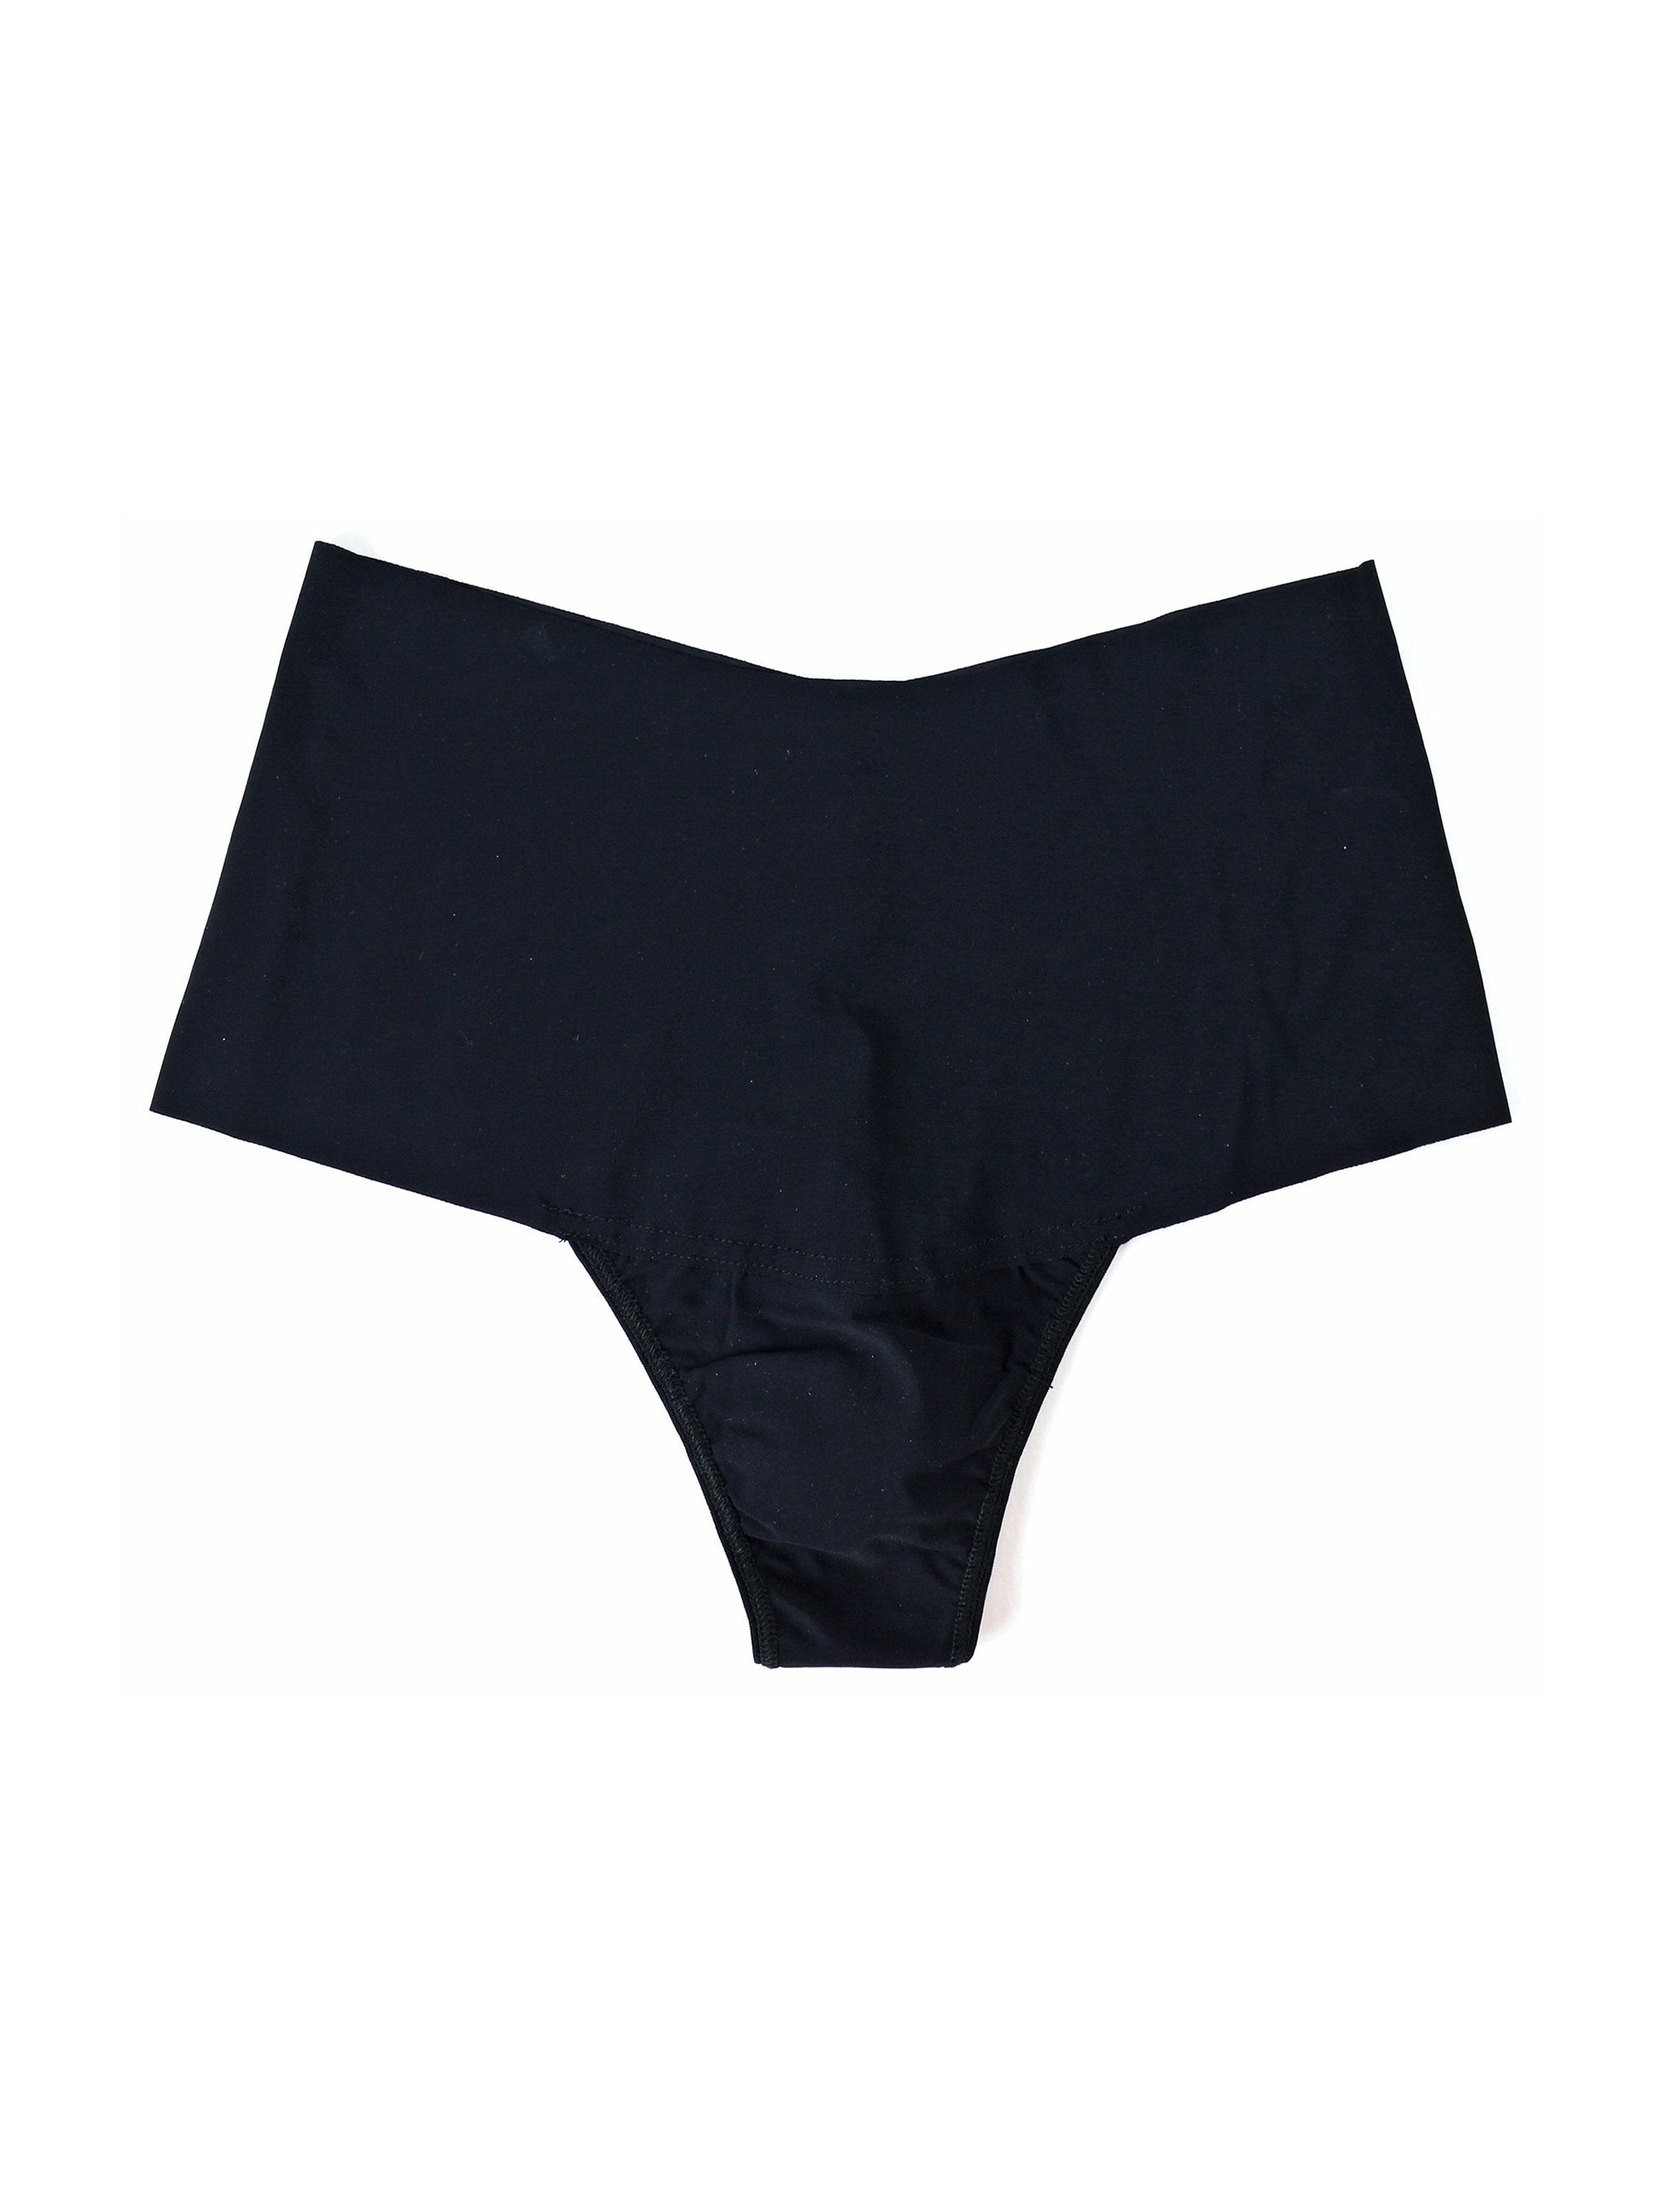 Buy Wholesale China Thong Briefs Underwear Size 8 Children Boys